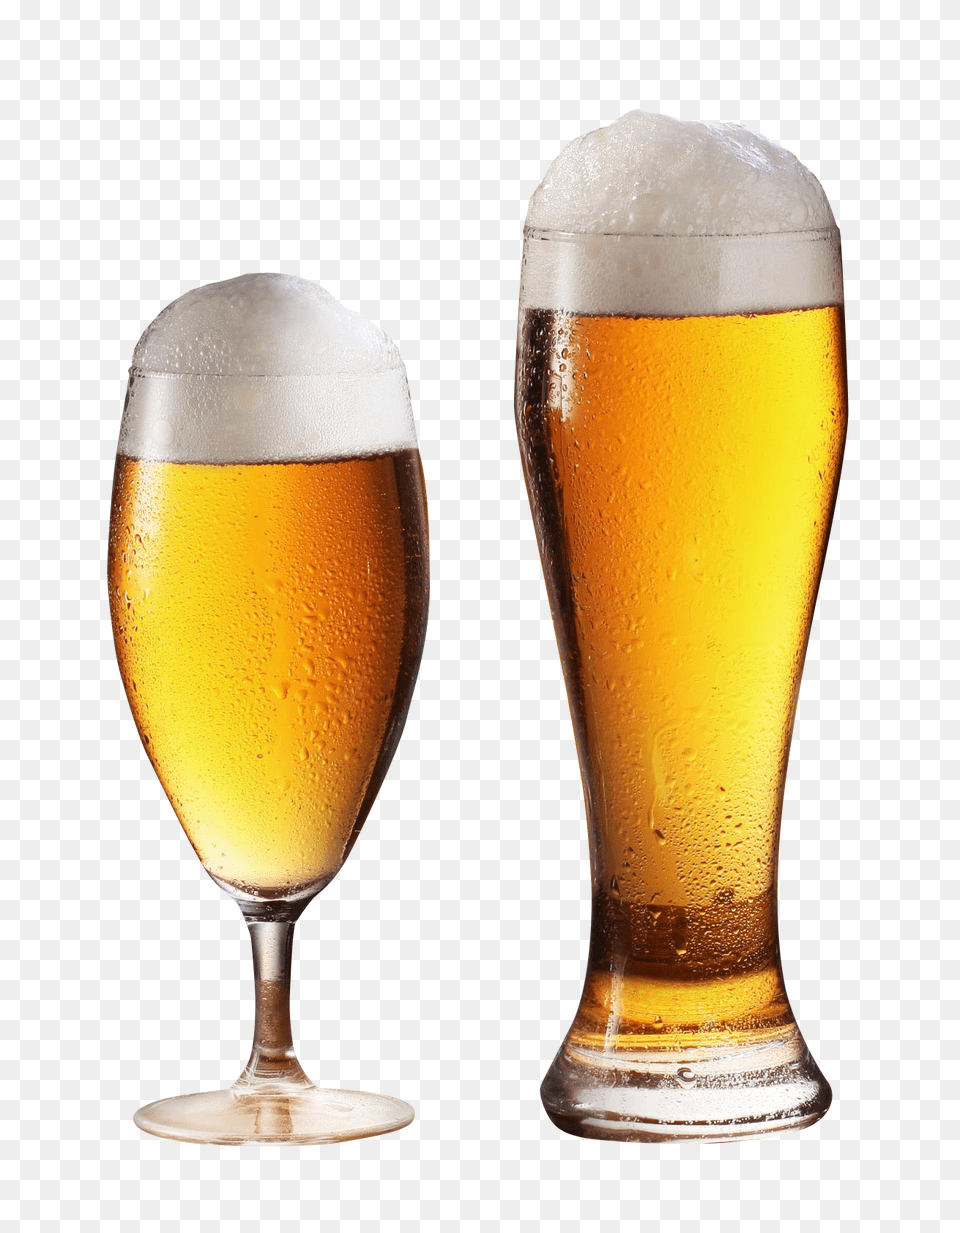 Pngpix Com Beer Glass Transparent, Alcohol, Beer Glass, Beverage, Lager Png